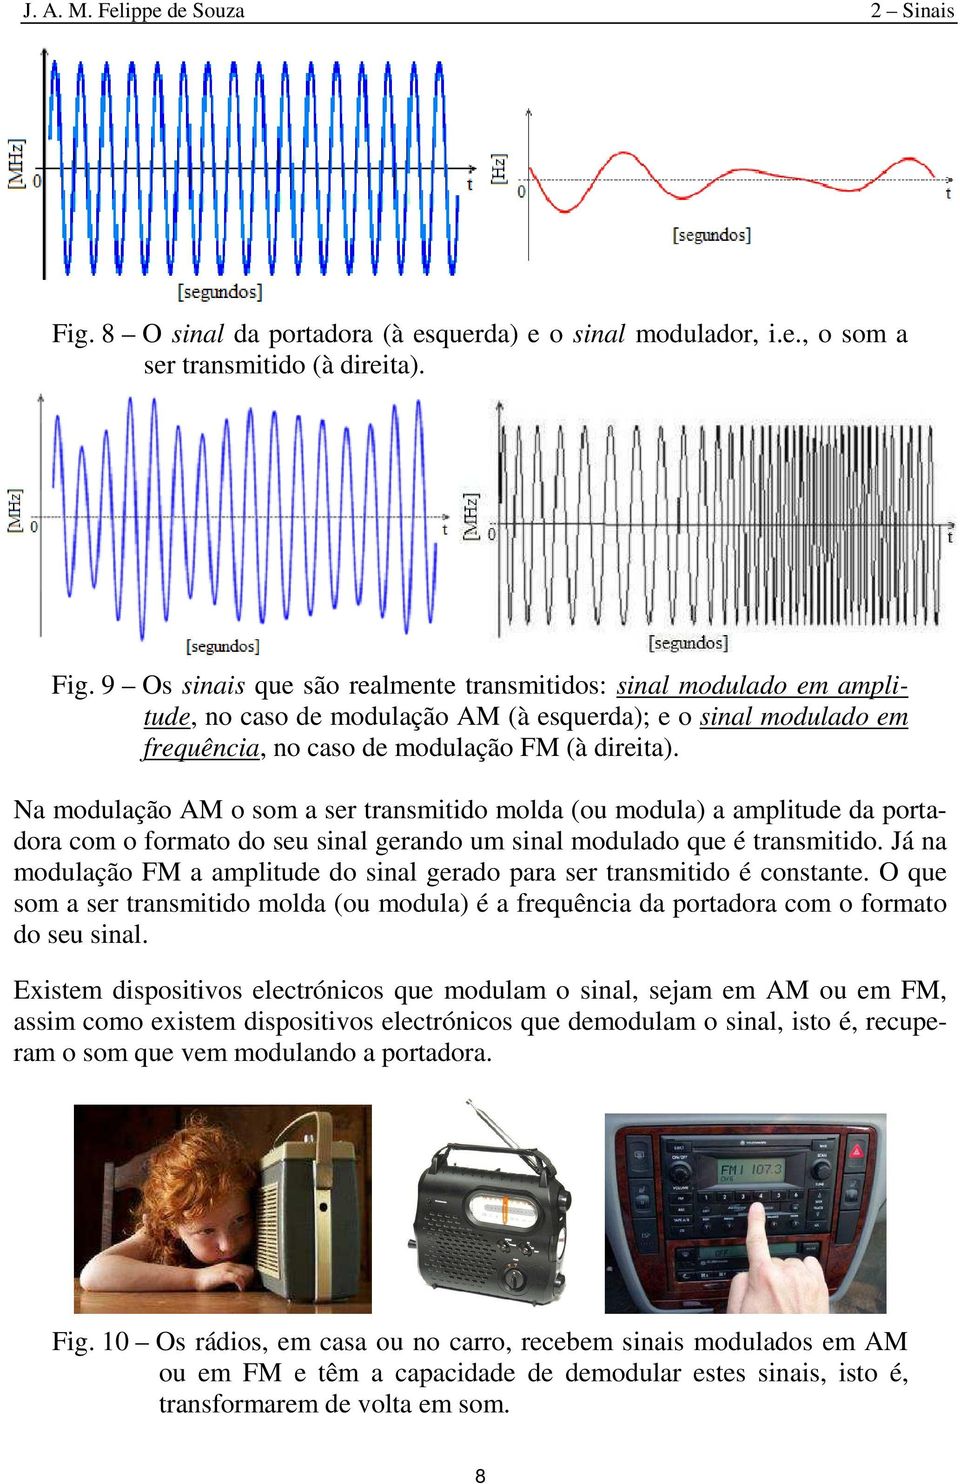 9 Os sinais que sã realmente transmitids: sinal mdulad em amplitude, n cas de mdulaçã AM (à esquerda); e sinal mdulad em frequência, n cas de mdulaçã FM (à direita).